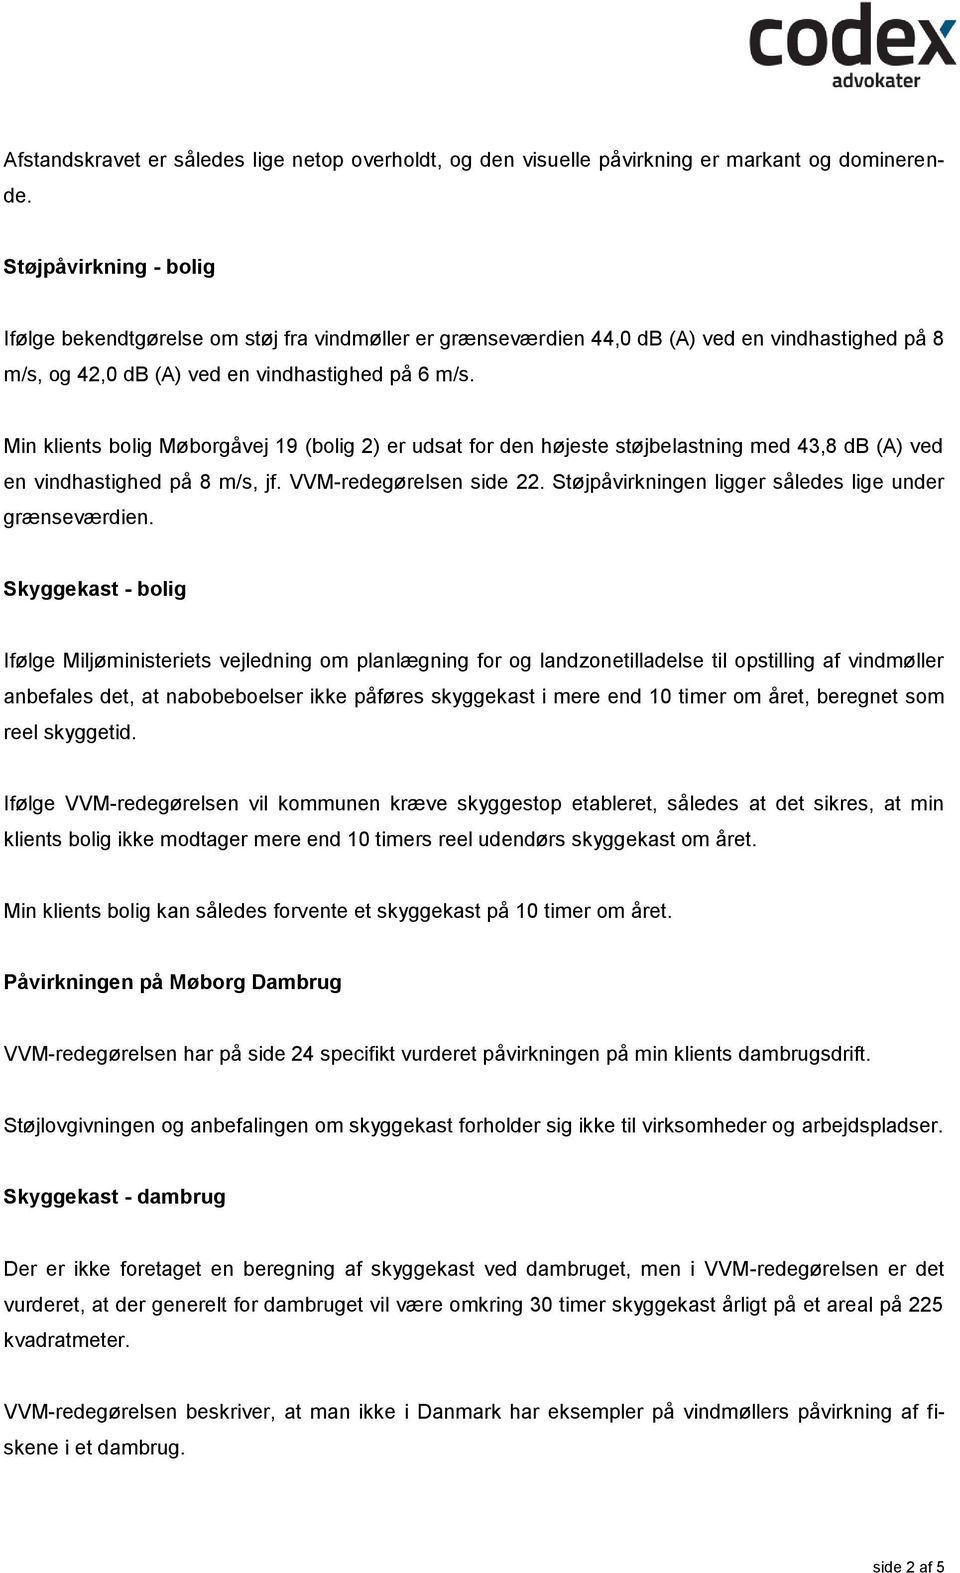 Min klients bolig Møborgåvej 19 (bolig 2) er udsat for den højeste støjbelastning med 43,8 db (A) ved en vindhastighed på 8 m/s, jf. VVM-redegørelsen side 22.